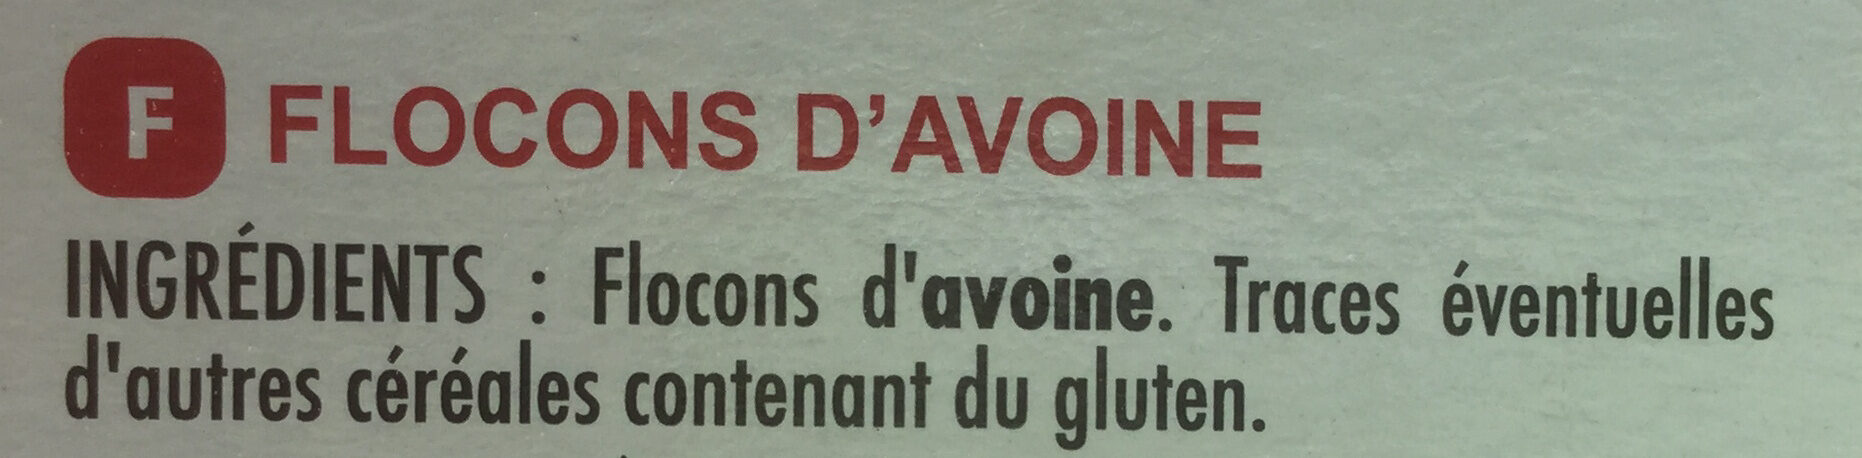 Flocons d'avoine - Ingrédients - fr